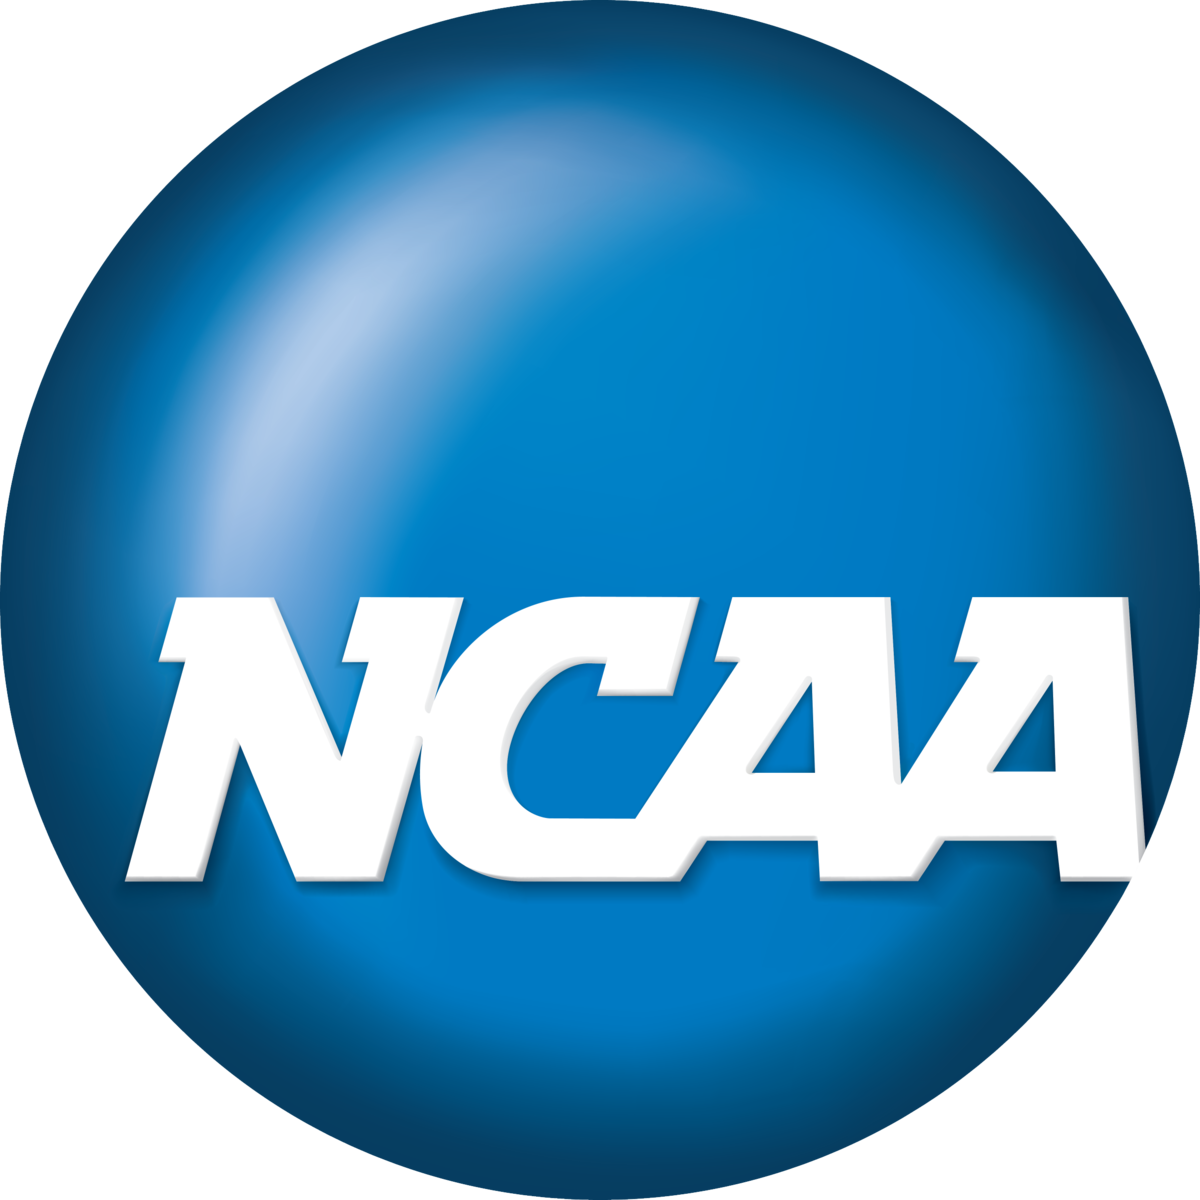 NCAA logo from Wikimedia Commons